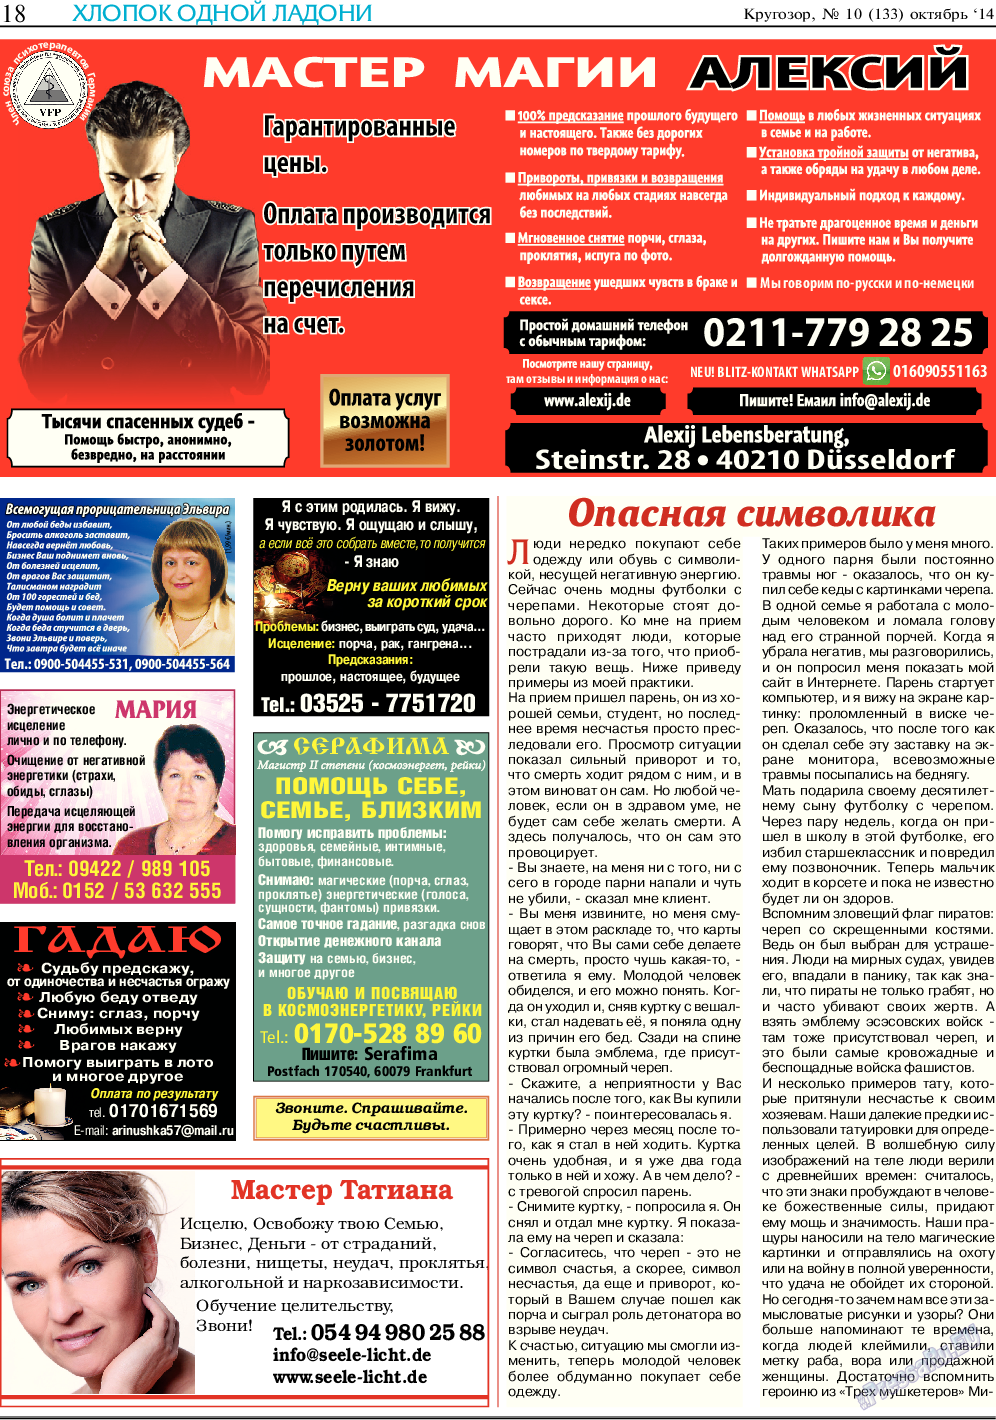 Кругозор, газета. 2014 №10 стр.18